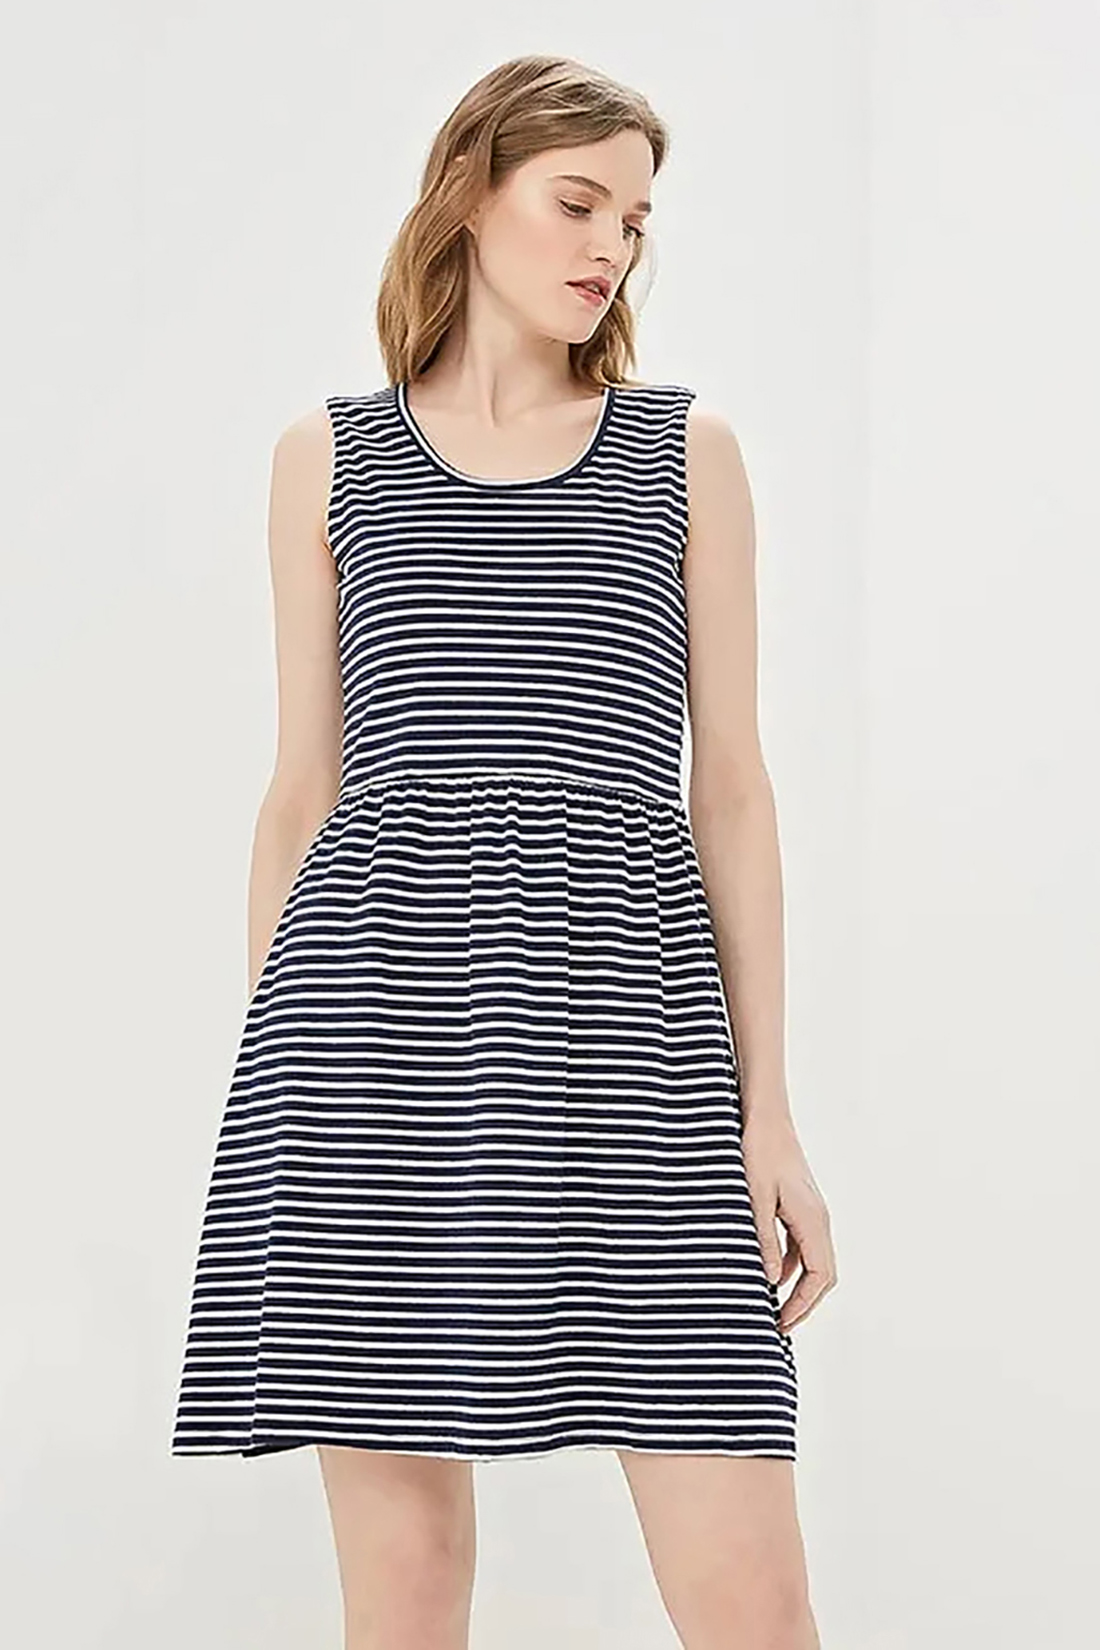 Платье в тонкую полоску (арт. baon B459099), размер L, цвет dark navy striped#синий Платье в тонкую полоску (арт. baon B459099) - фото 3